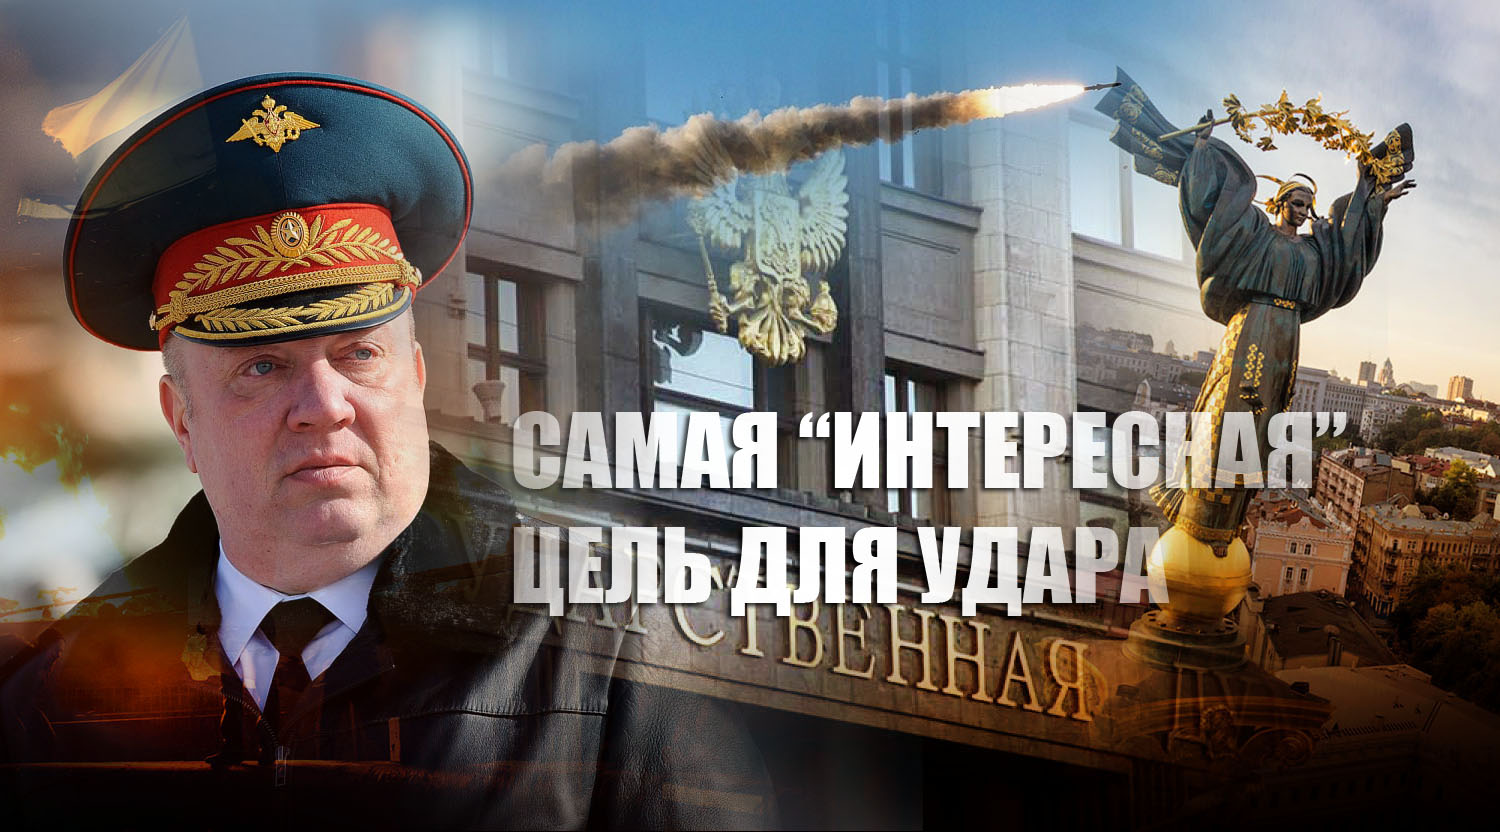 Генерал-лейтенант Гурулёв назвал "самую интересную цель" для ракетного удара на Украине